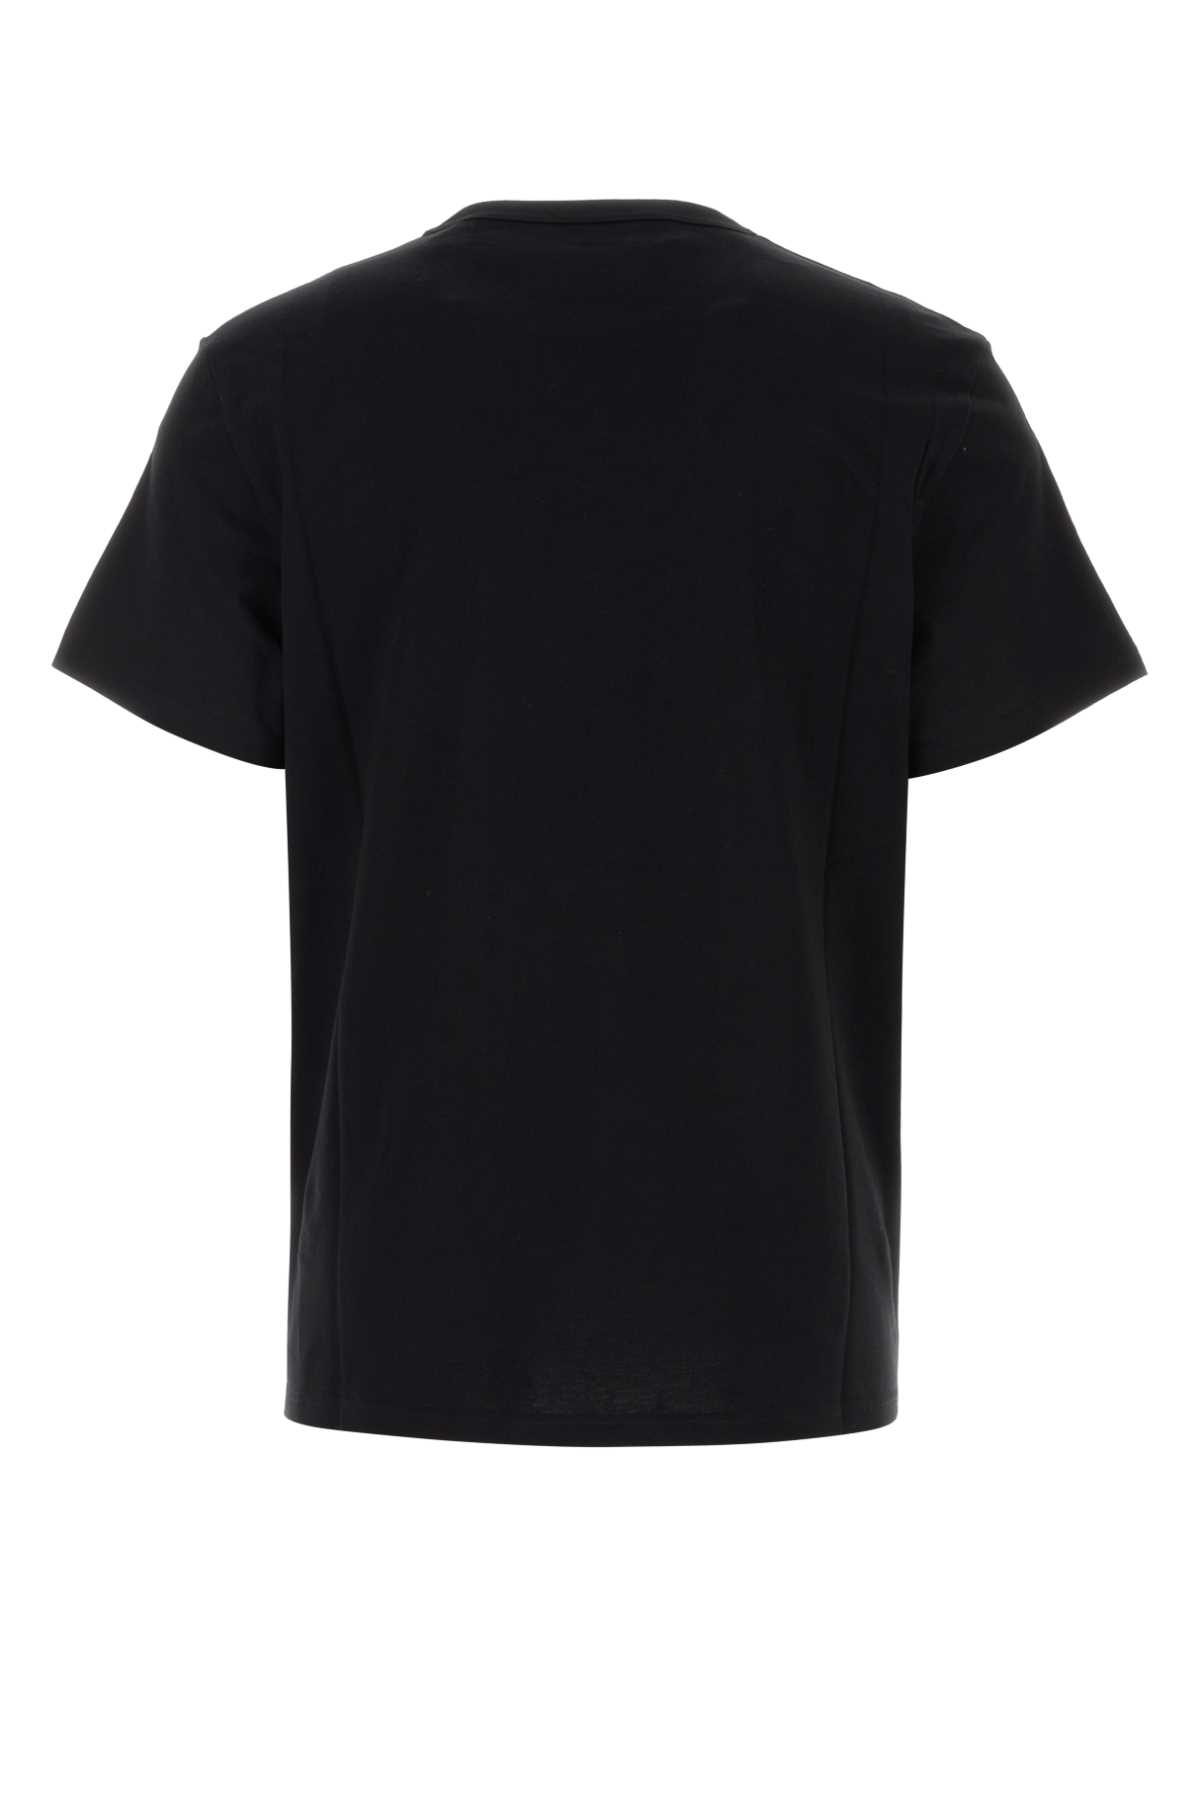 Shop Alexander Mcqueen Black Cotton T-shirt